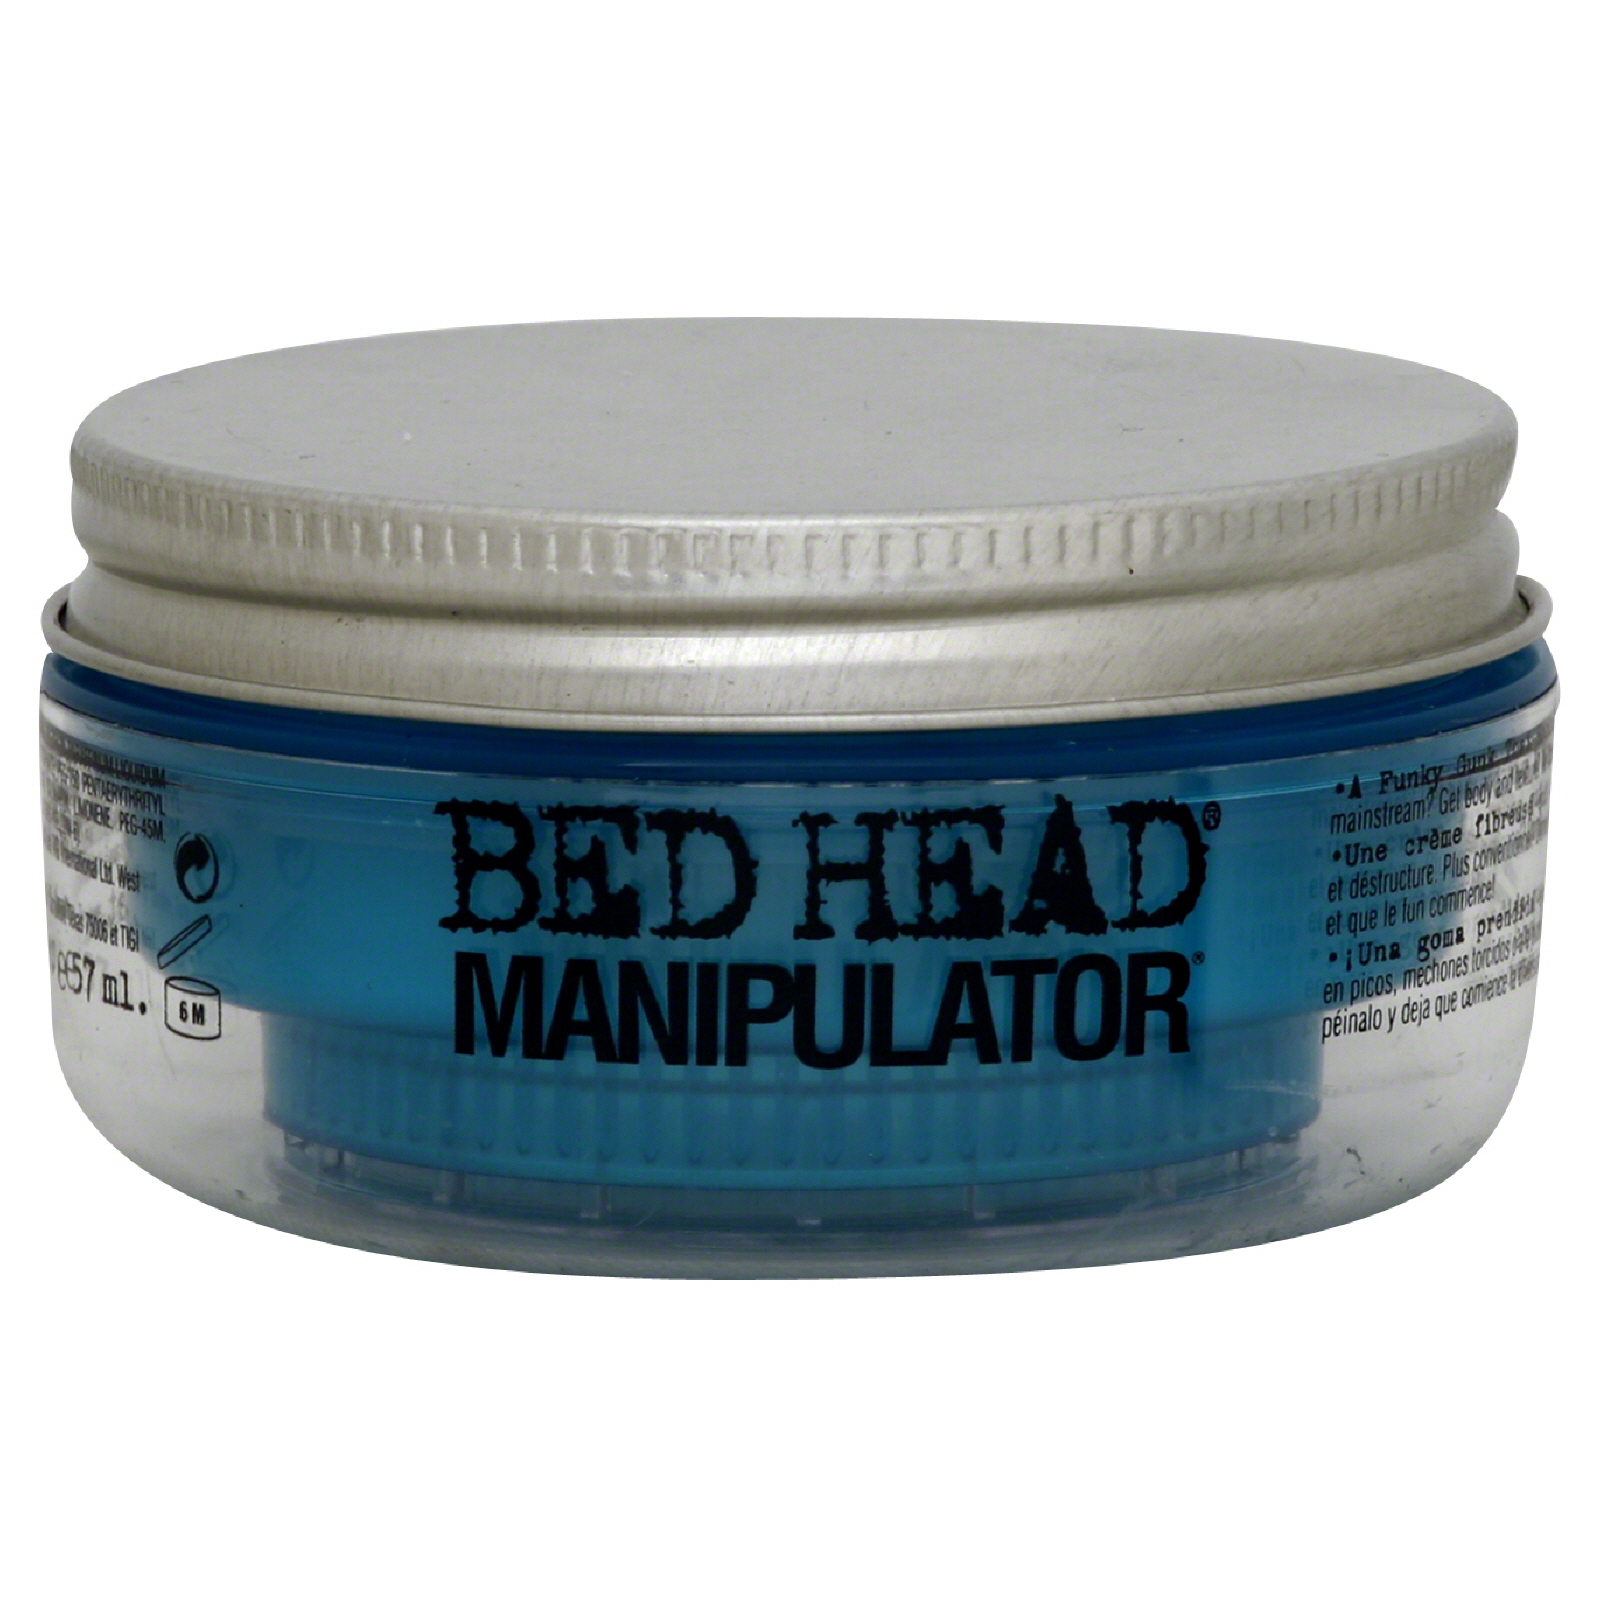 Tigi Bed Head Manipulator by  for Unisex - 2 oz Styling